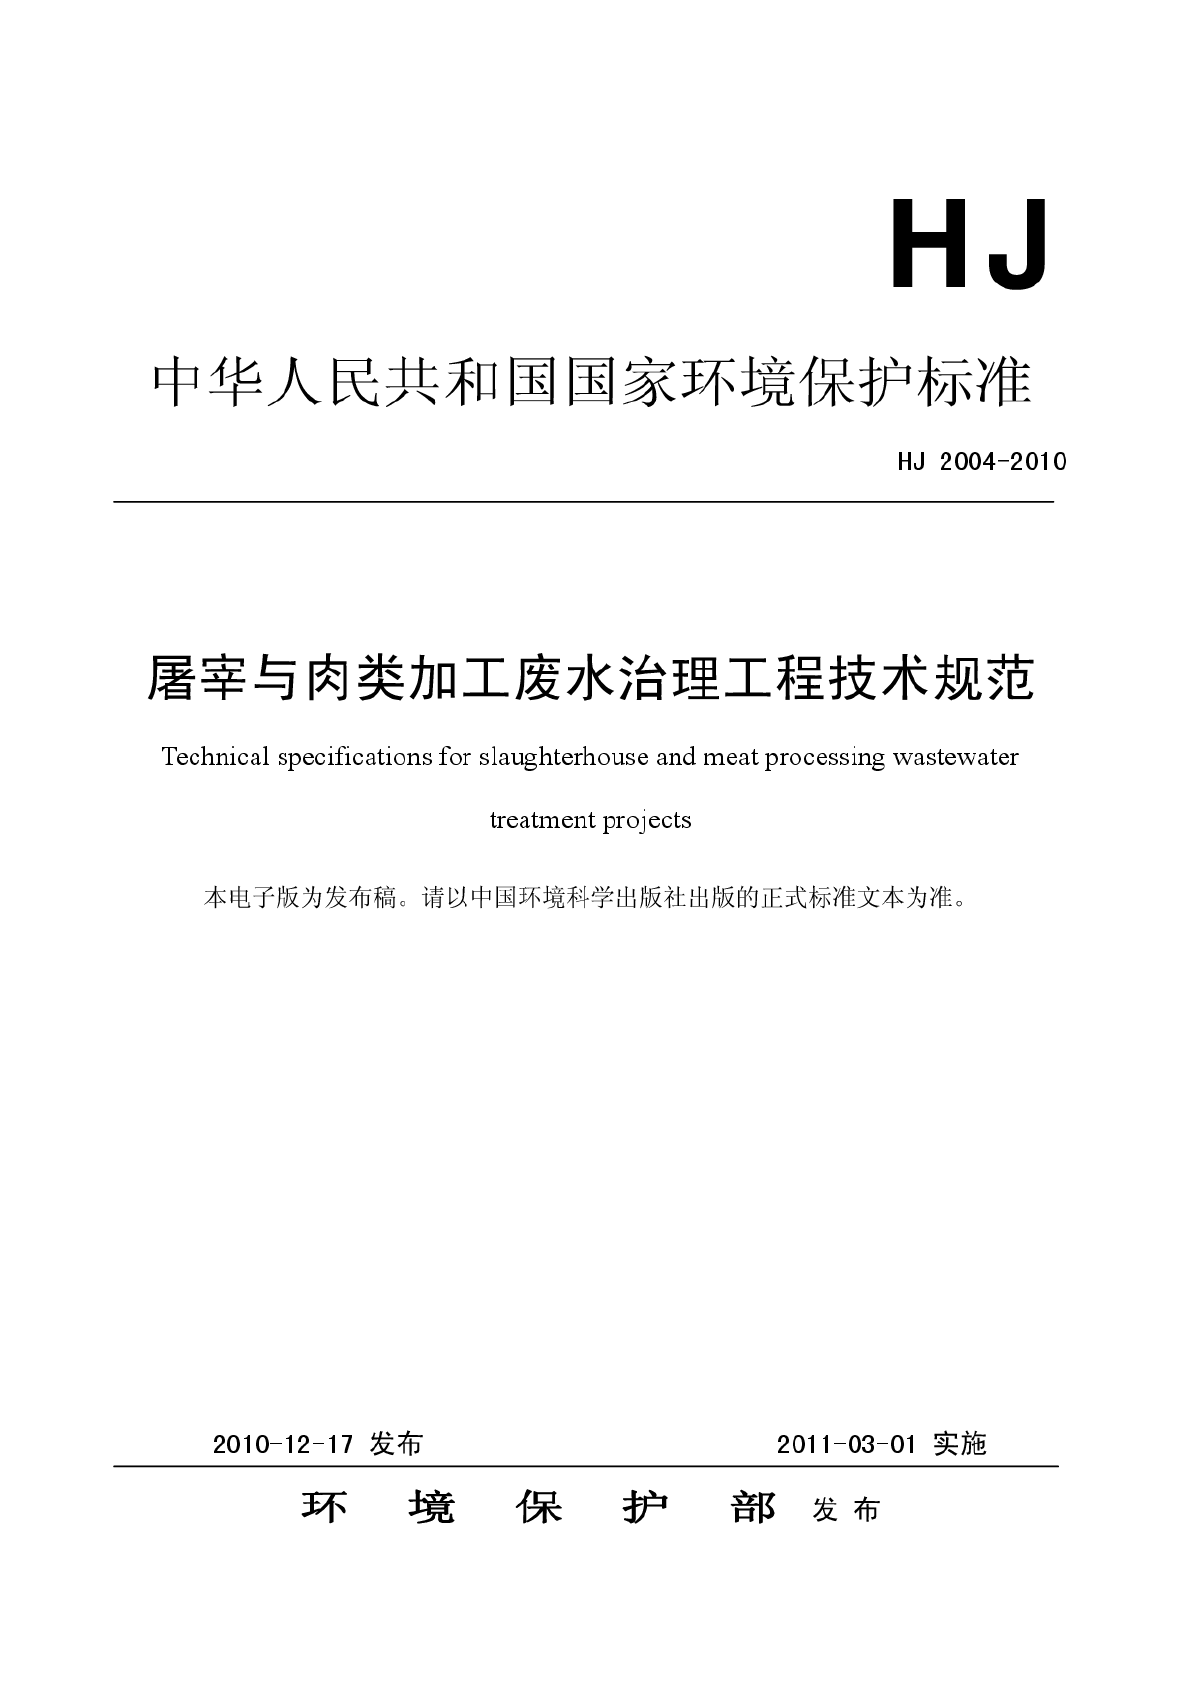 屠宰与肉类加工废水治理工程技术规范（HJ+2004-2010）.pdf